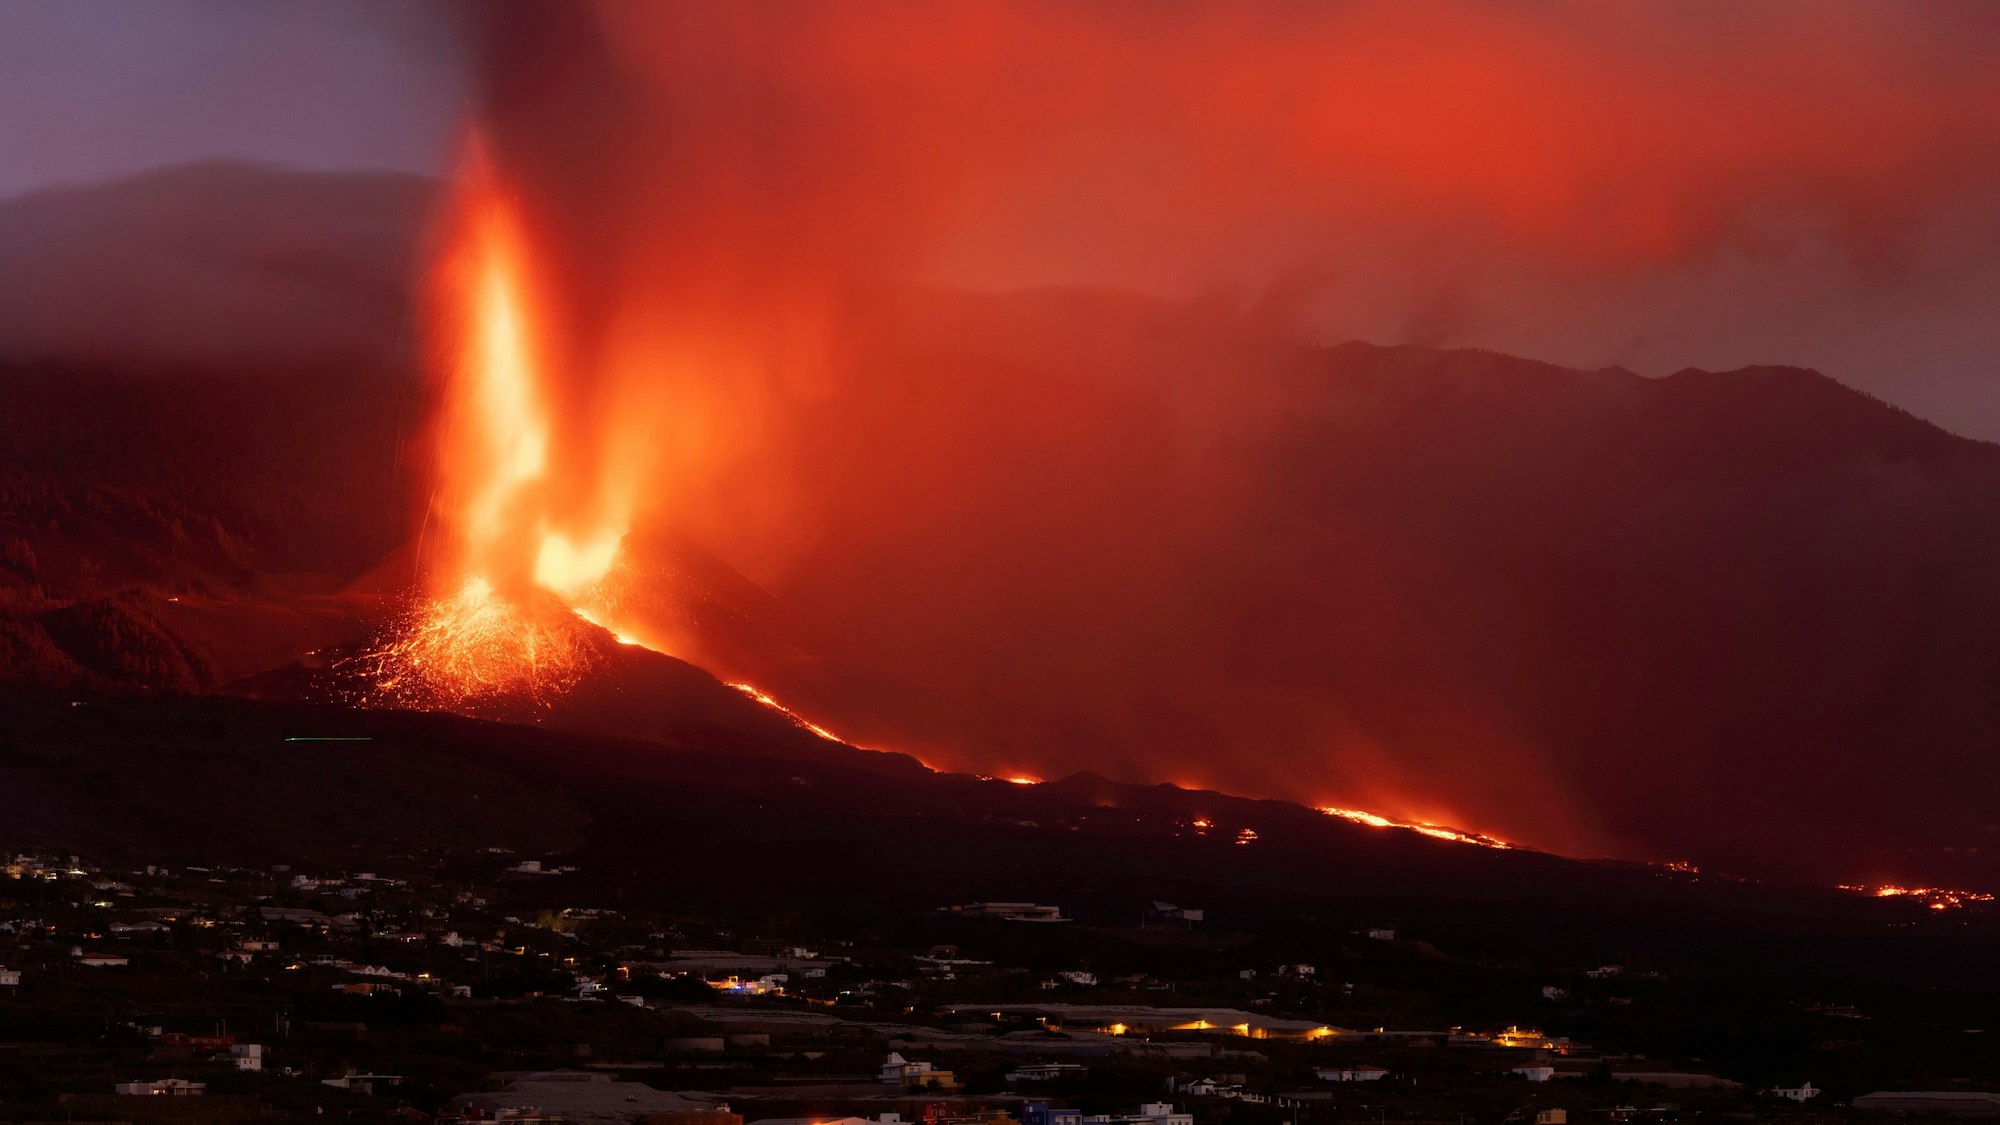 Nach dem Vulkanausbruch reisen zehntausende Touristen nach La Palma, um die Ausbruchsstelle anzuschaun.